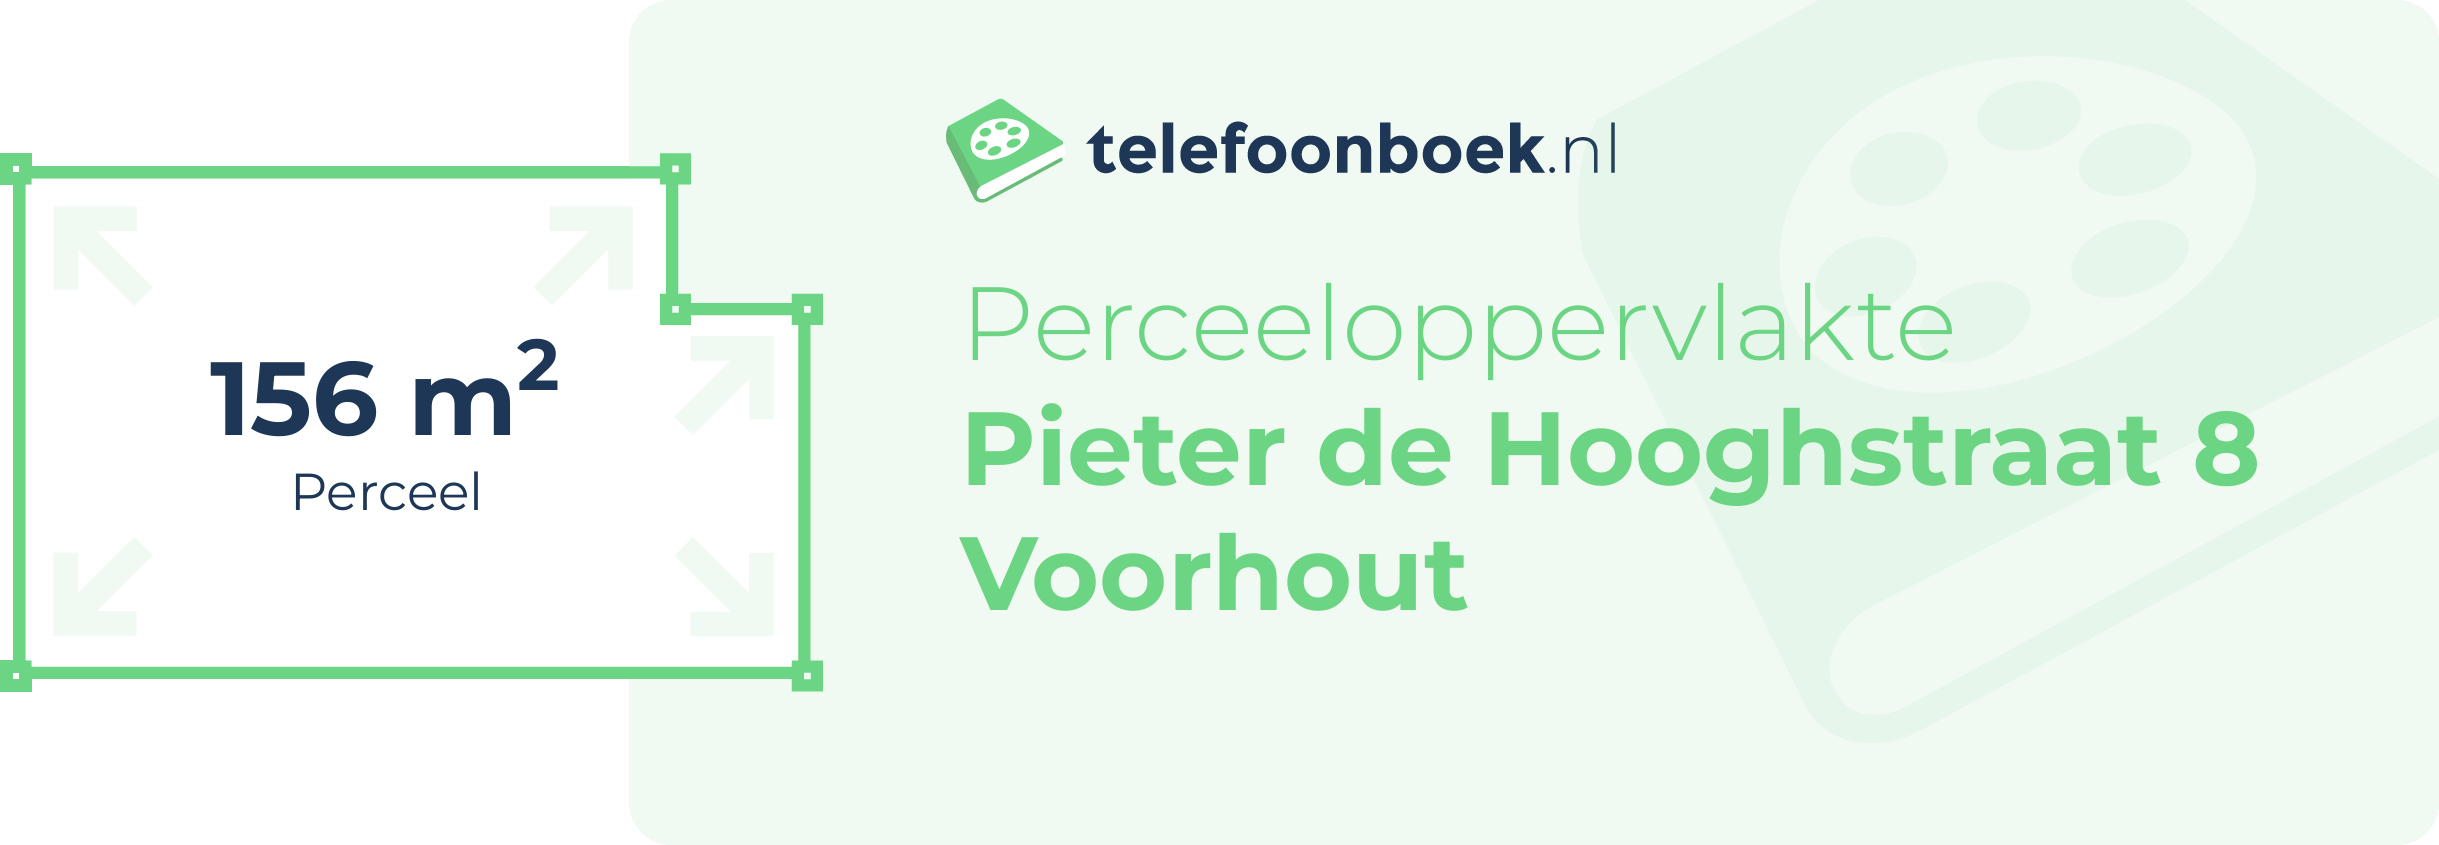 Perceeloppervlakte Pieter De Hooghstraat 8 Voorhout